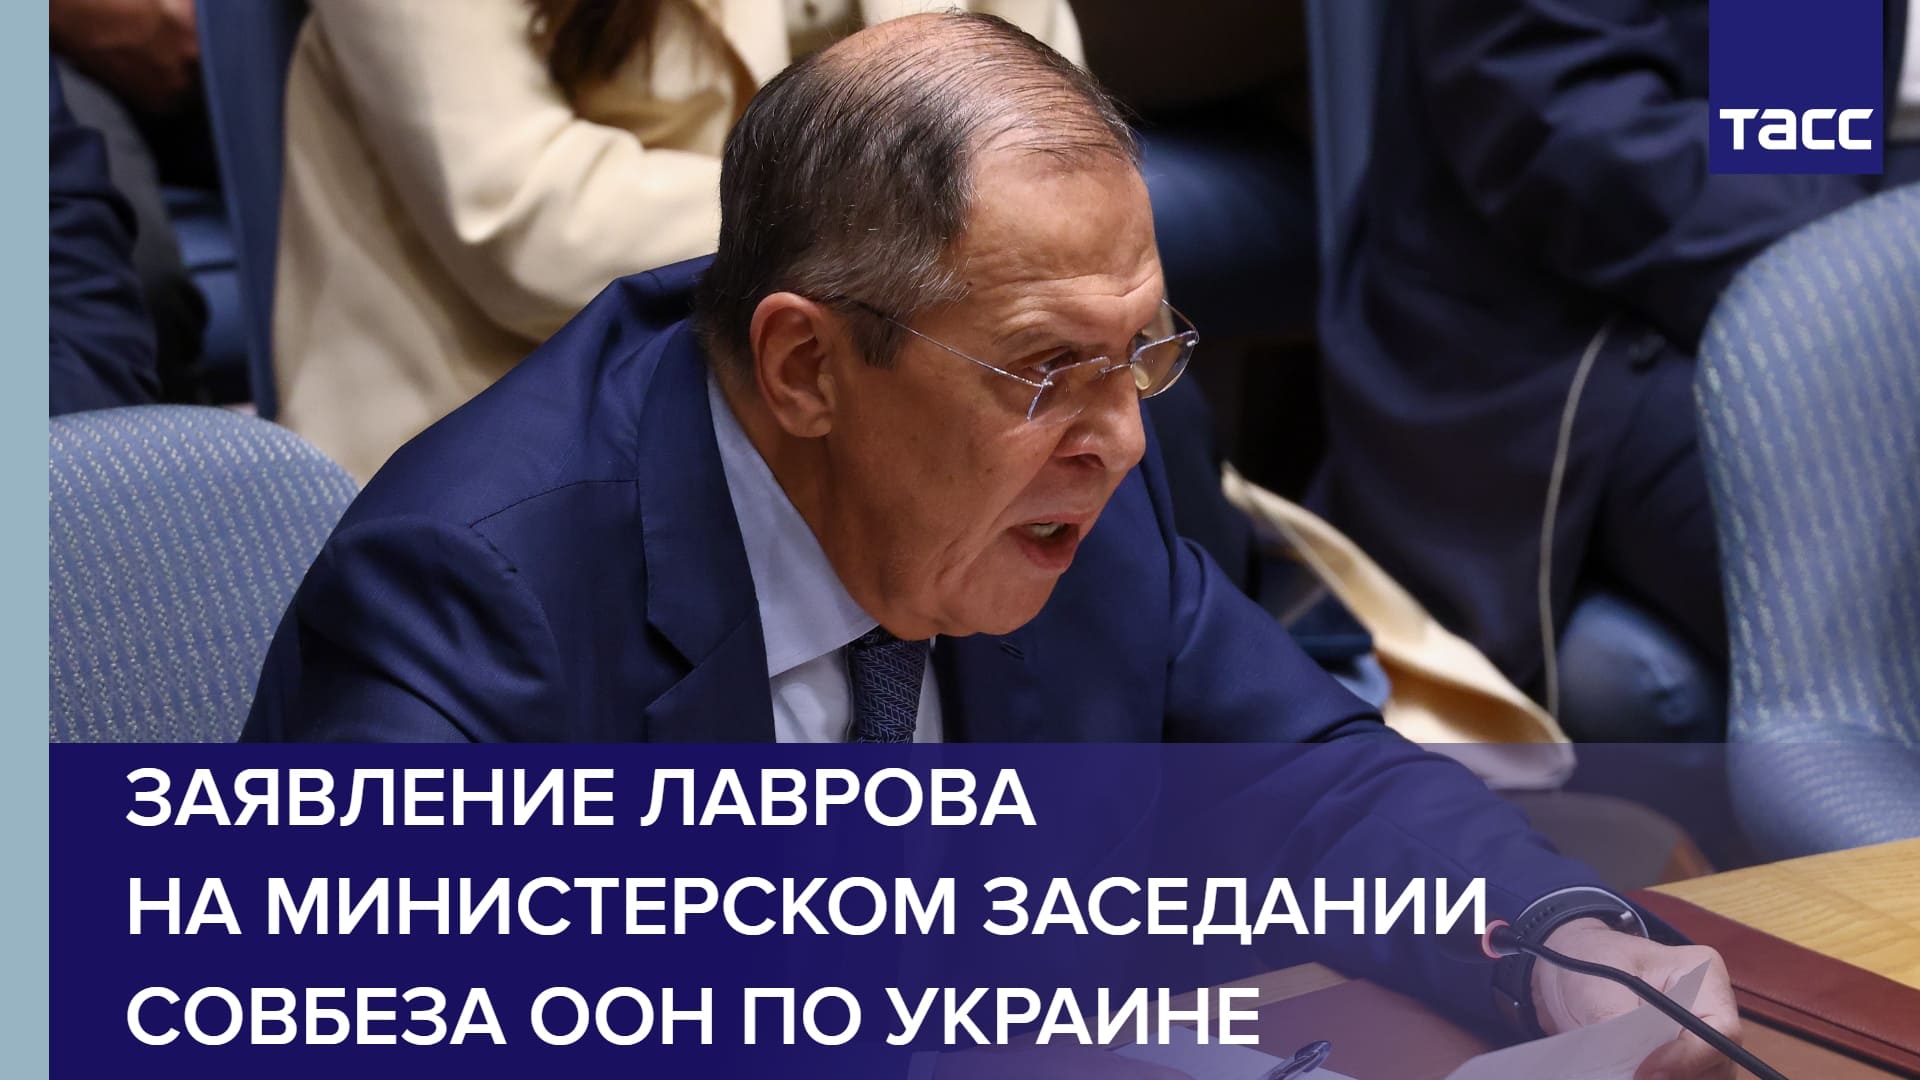 Заявление Лаврова на министерском заседании Совбеза ООН по Украине